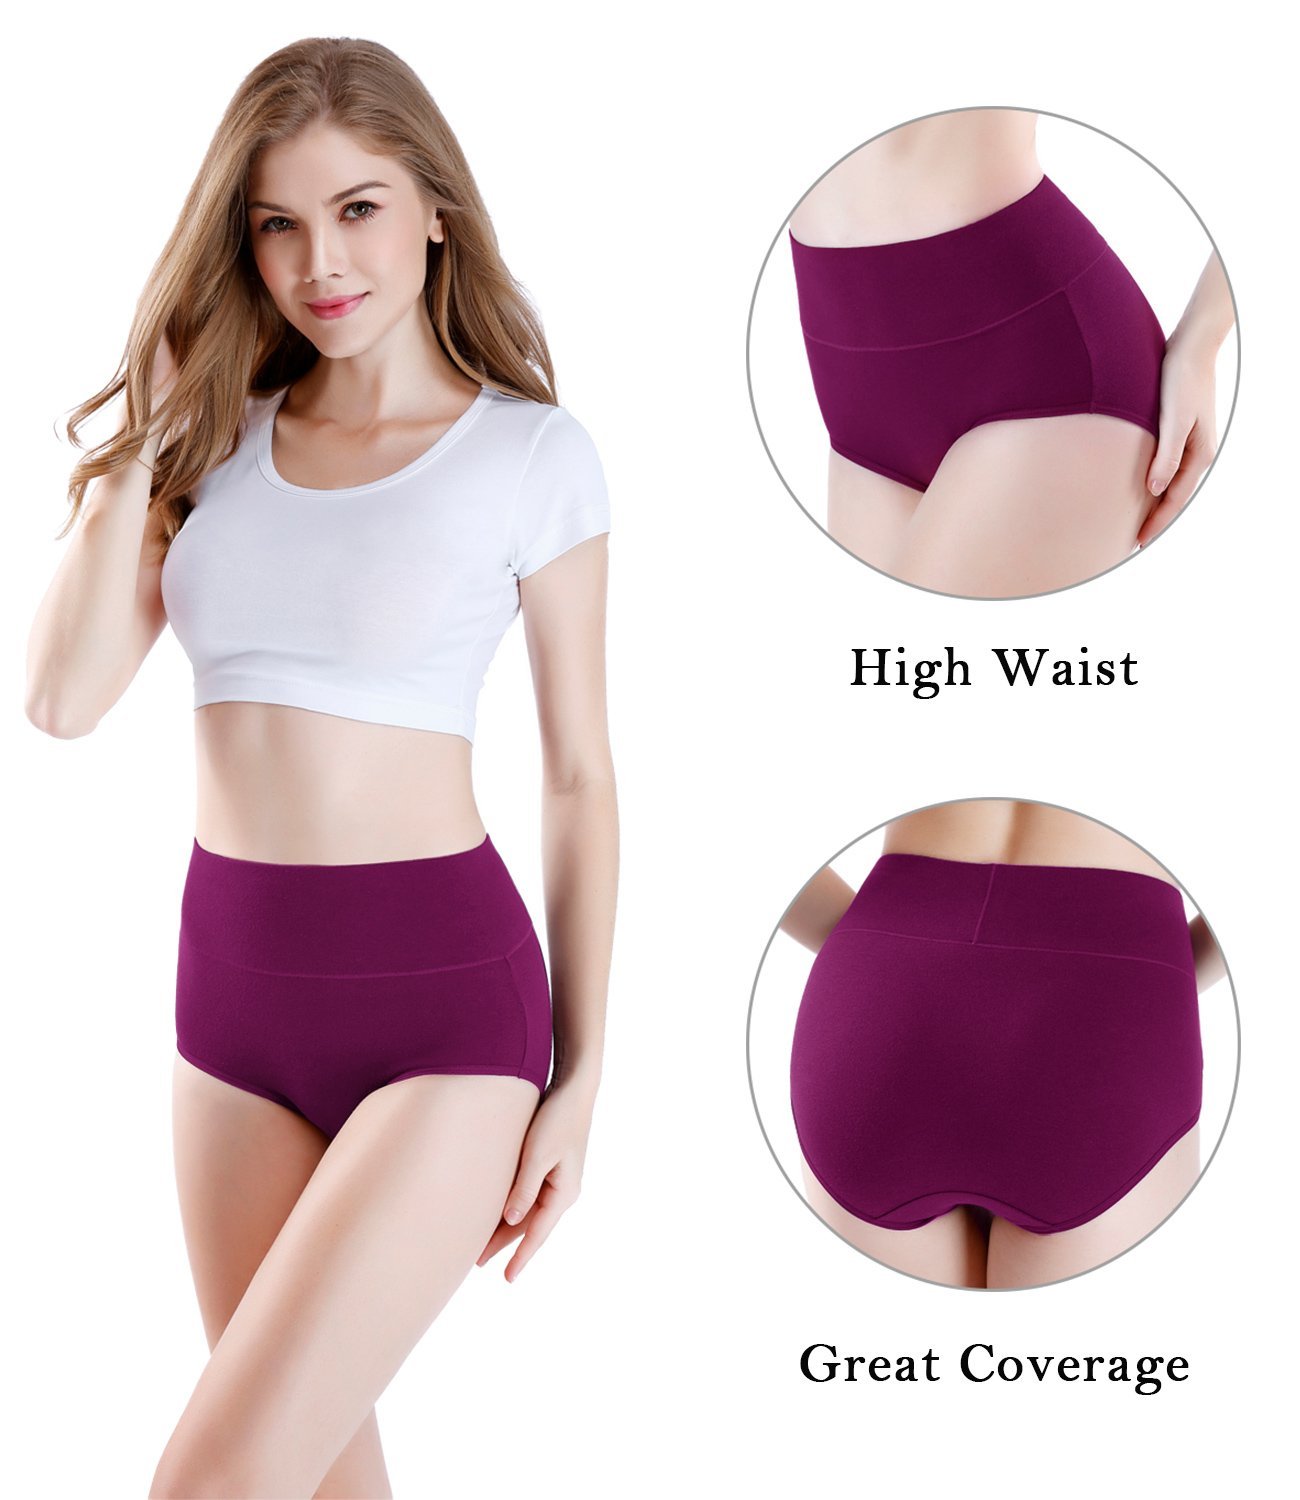 wirarpa Women's Underwear Cotton Super High India